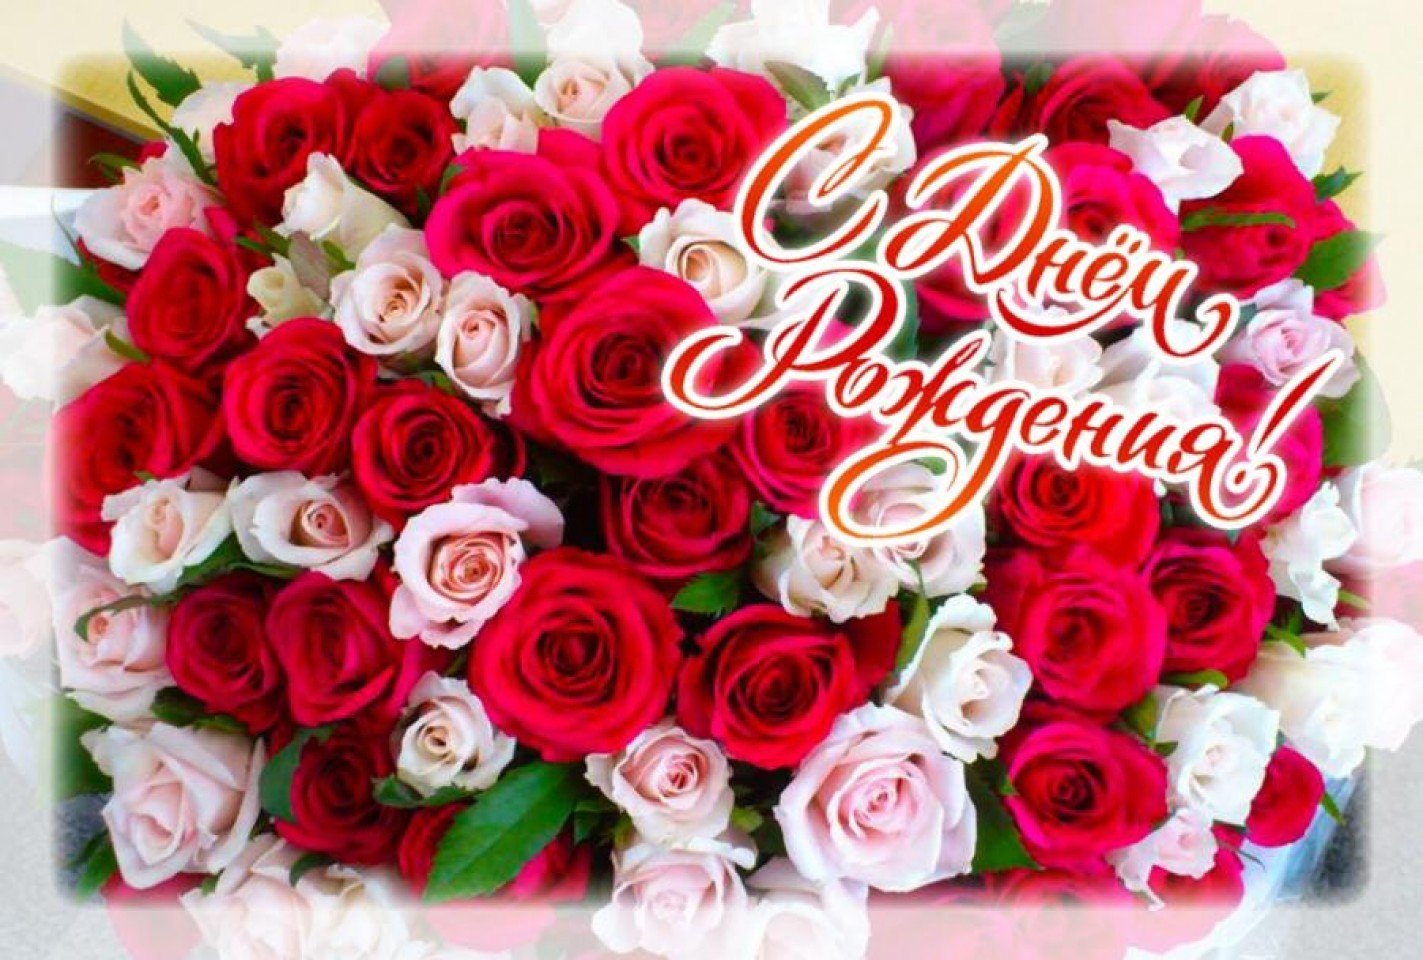 Красивая 6 на день рождения. Цветы поздравления. Букет роз с днем рождения. Красивый букет цветов с днем рождения. С днем рождения открытки с цветами.